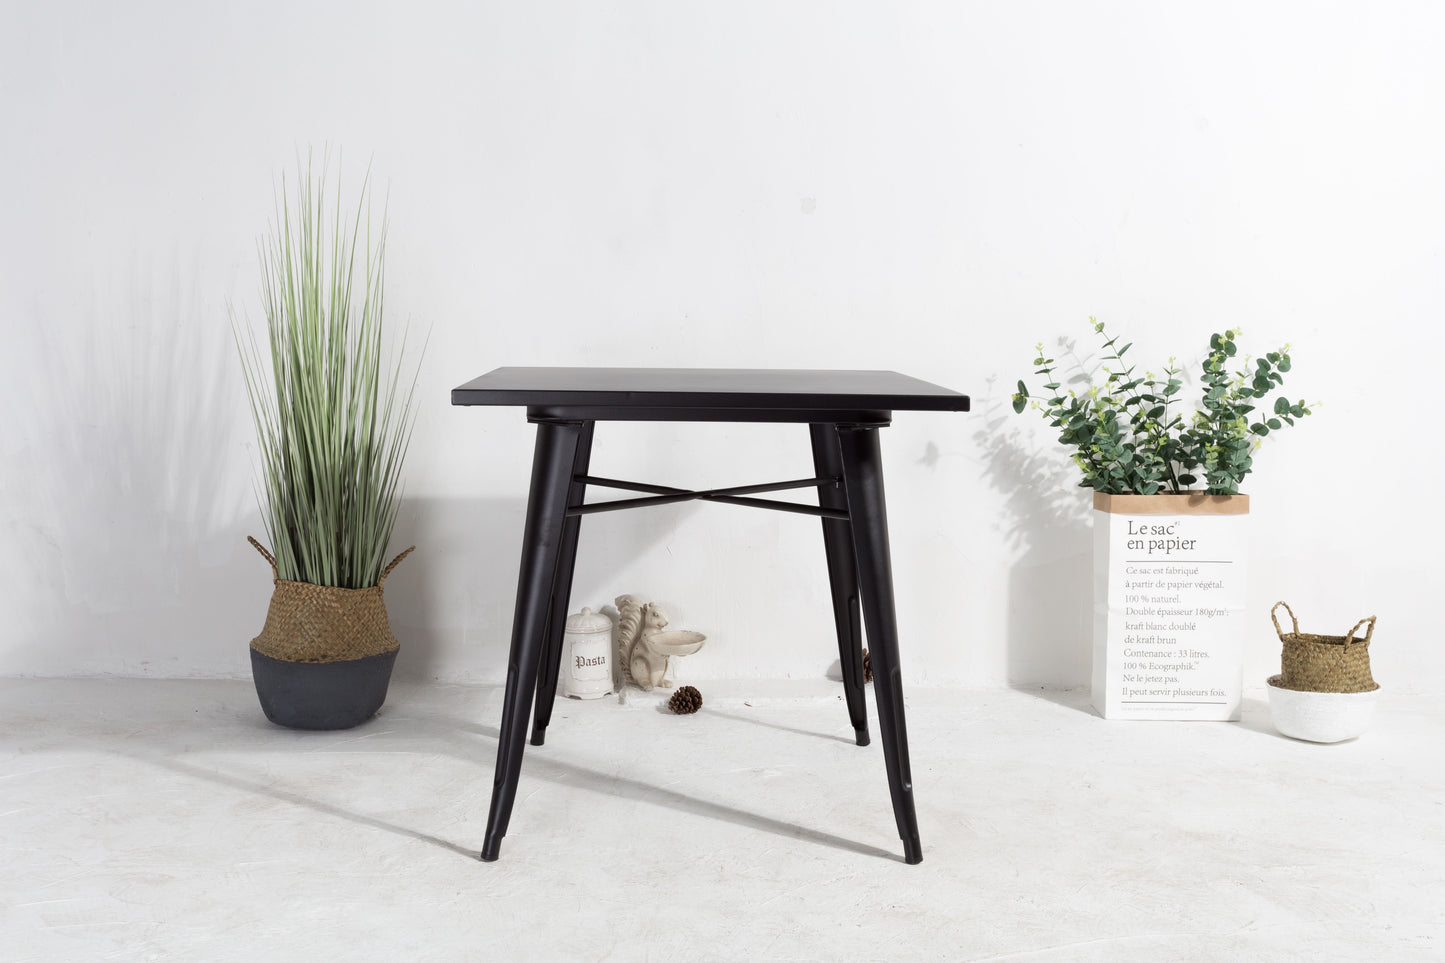 Table style industriel en métal noir mat - 80x80 cm